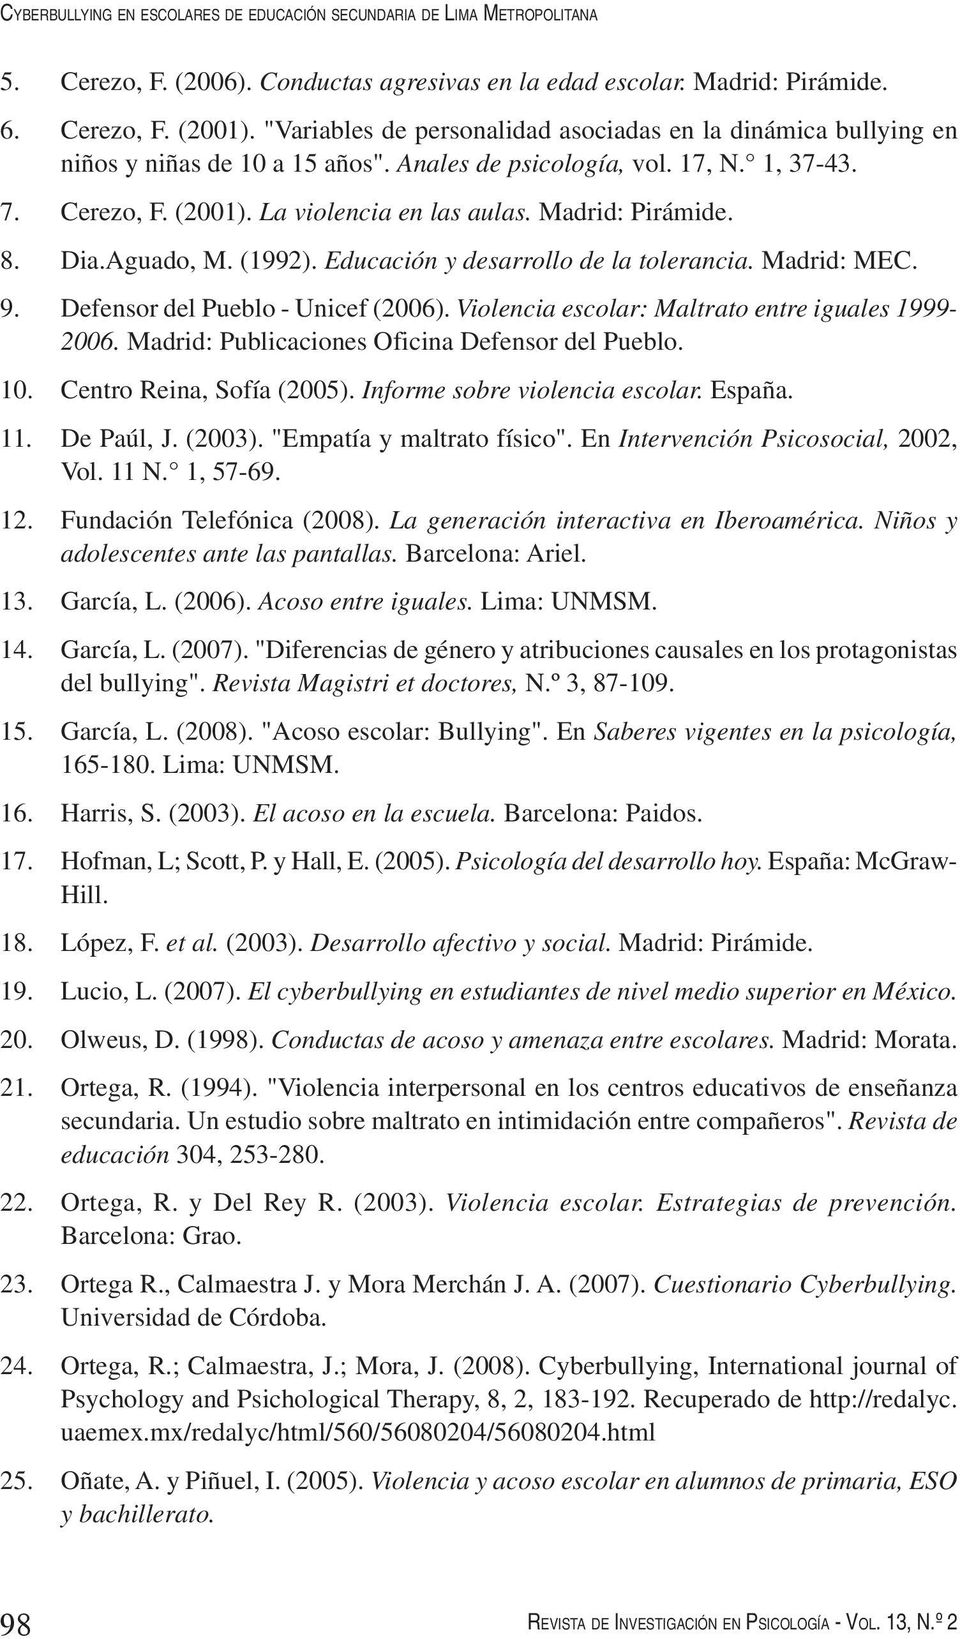 Madrid: Pirámide. 8. Dia.Aguado, M. (1992). Educación y desarrollo de la tolerancia. Madrid: MEC. 9. Defensor del Pueblo - Unicef (2006). Violencia escolar: Maltrato entre iguales 1999-2006.